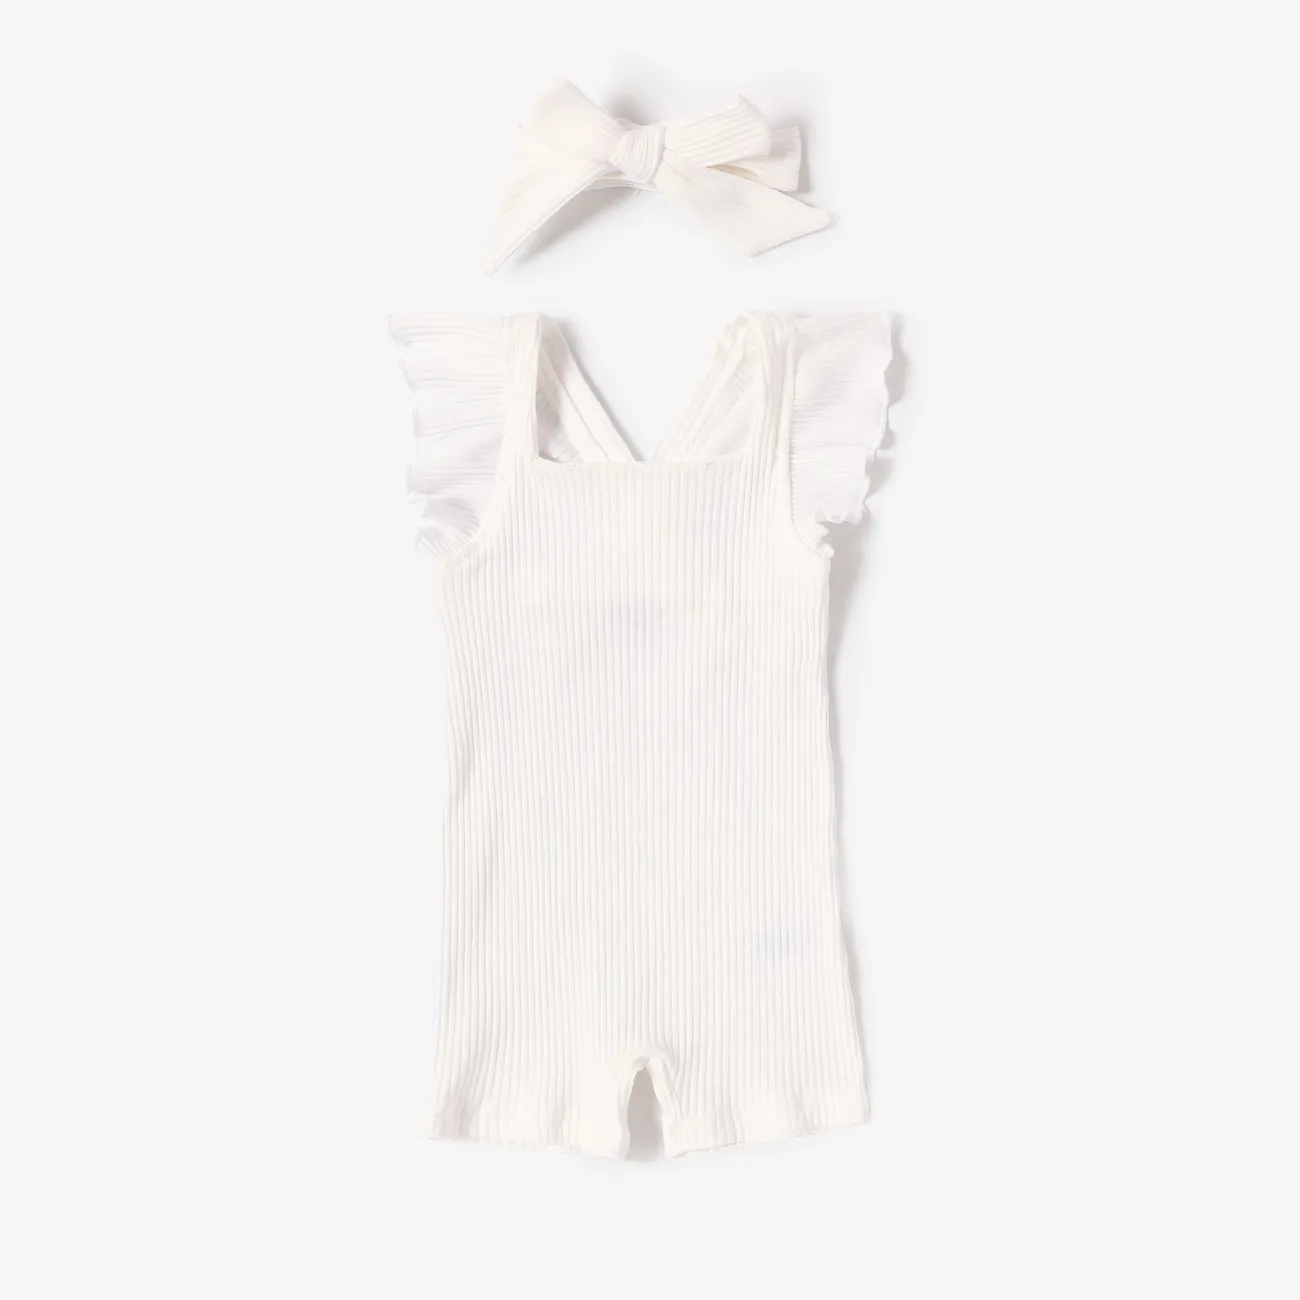 Baby Girl 2pcs Ruffled Sleeveless Jumpsuit with Headband White big image 1